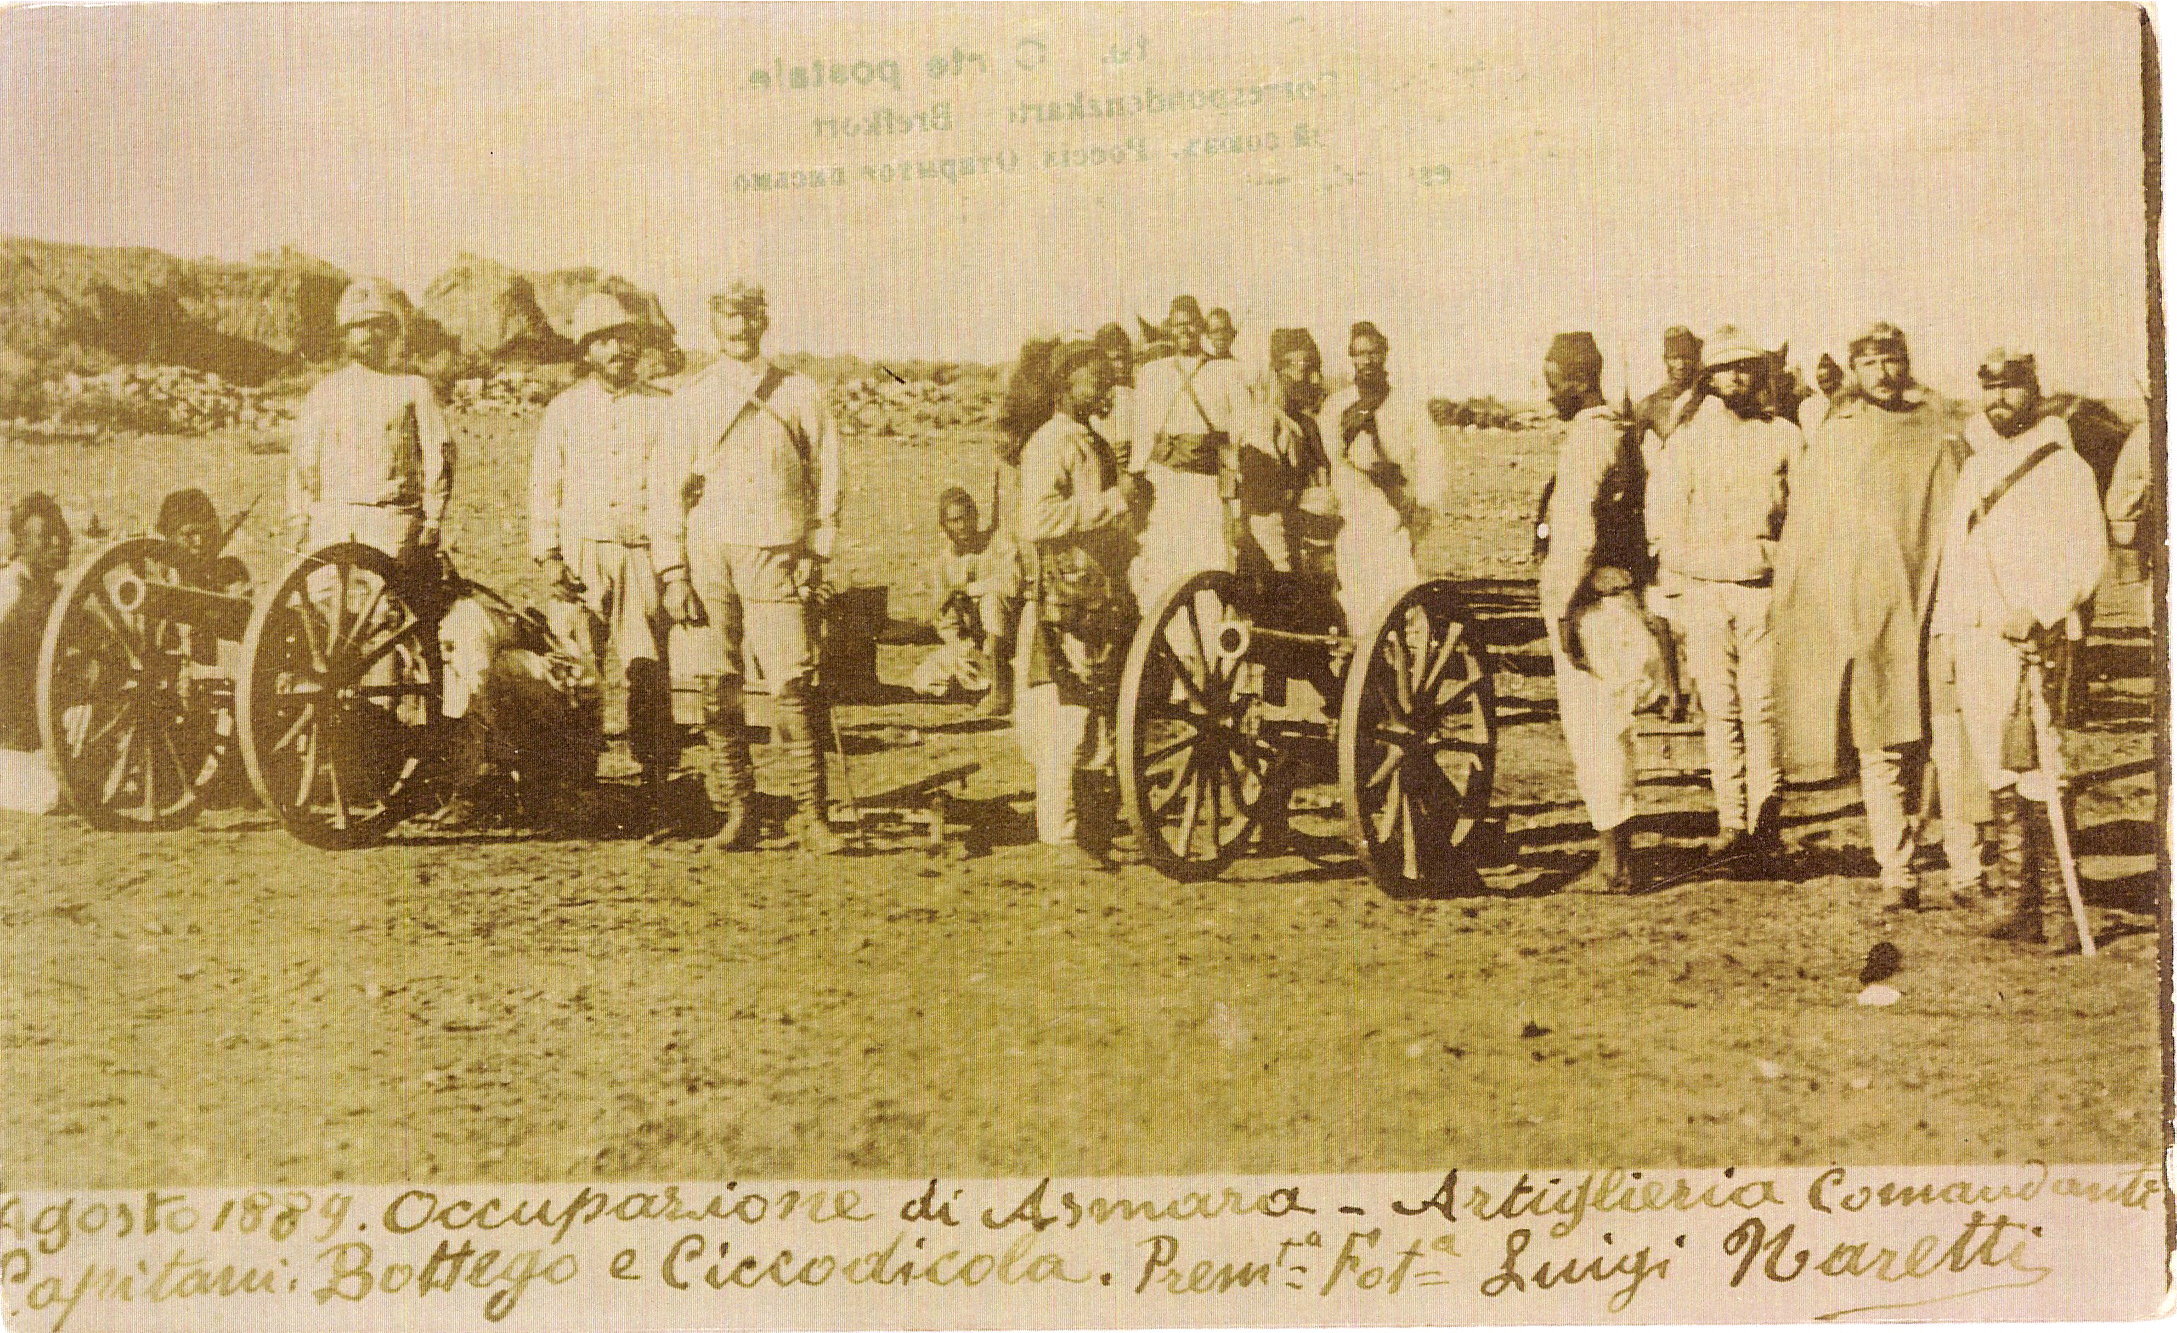 Fig. 1. Vittorio Bottego comanda con Federico Ciccodicola un gruppo di artiglieri nell’occupazione di Asmara, agosto 1889 [foto Luigi Naretti].